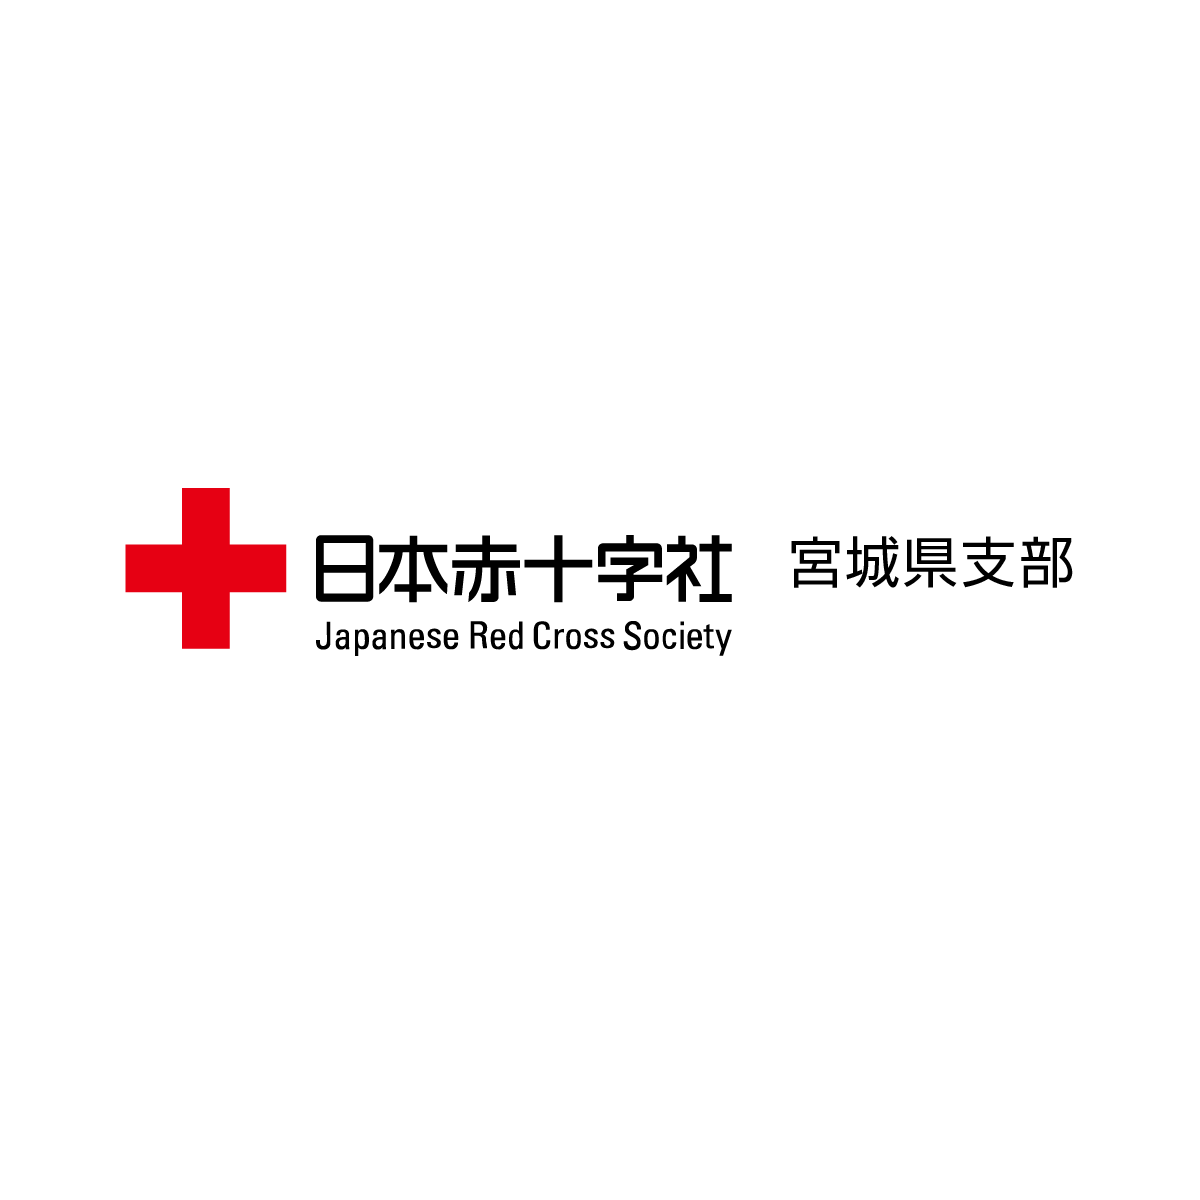 救急法 講習会について 日本赤十字社 宮城県支部